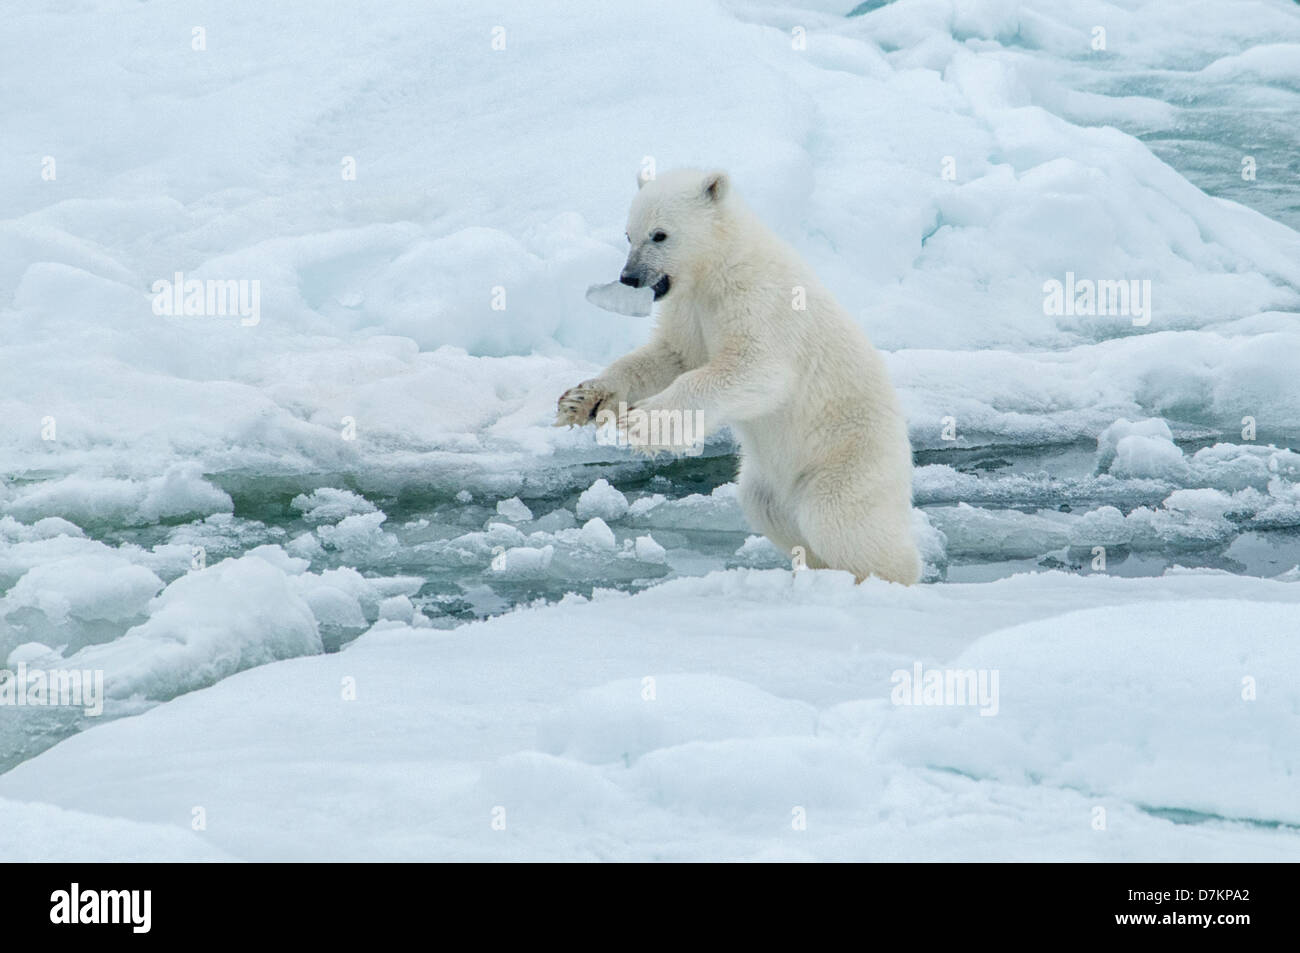 Carino Polar Bear Cub, Ursus maritimus, giocando con ghiaccio nella sua bocca sulla Olgastretet Pack ghiaccio, arcipelago delle Svalbard, Norvegia Foto Stock